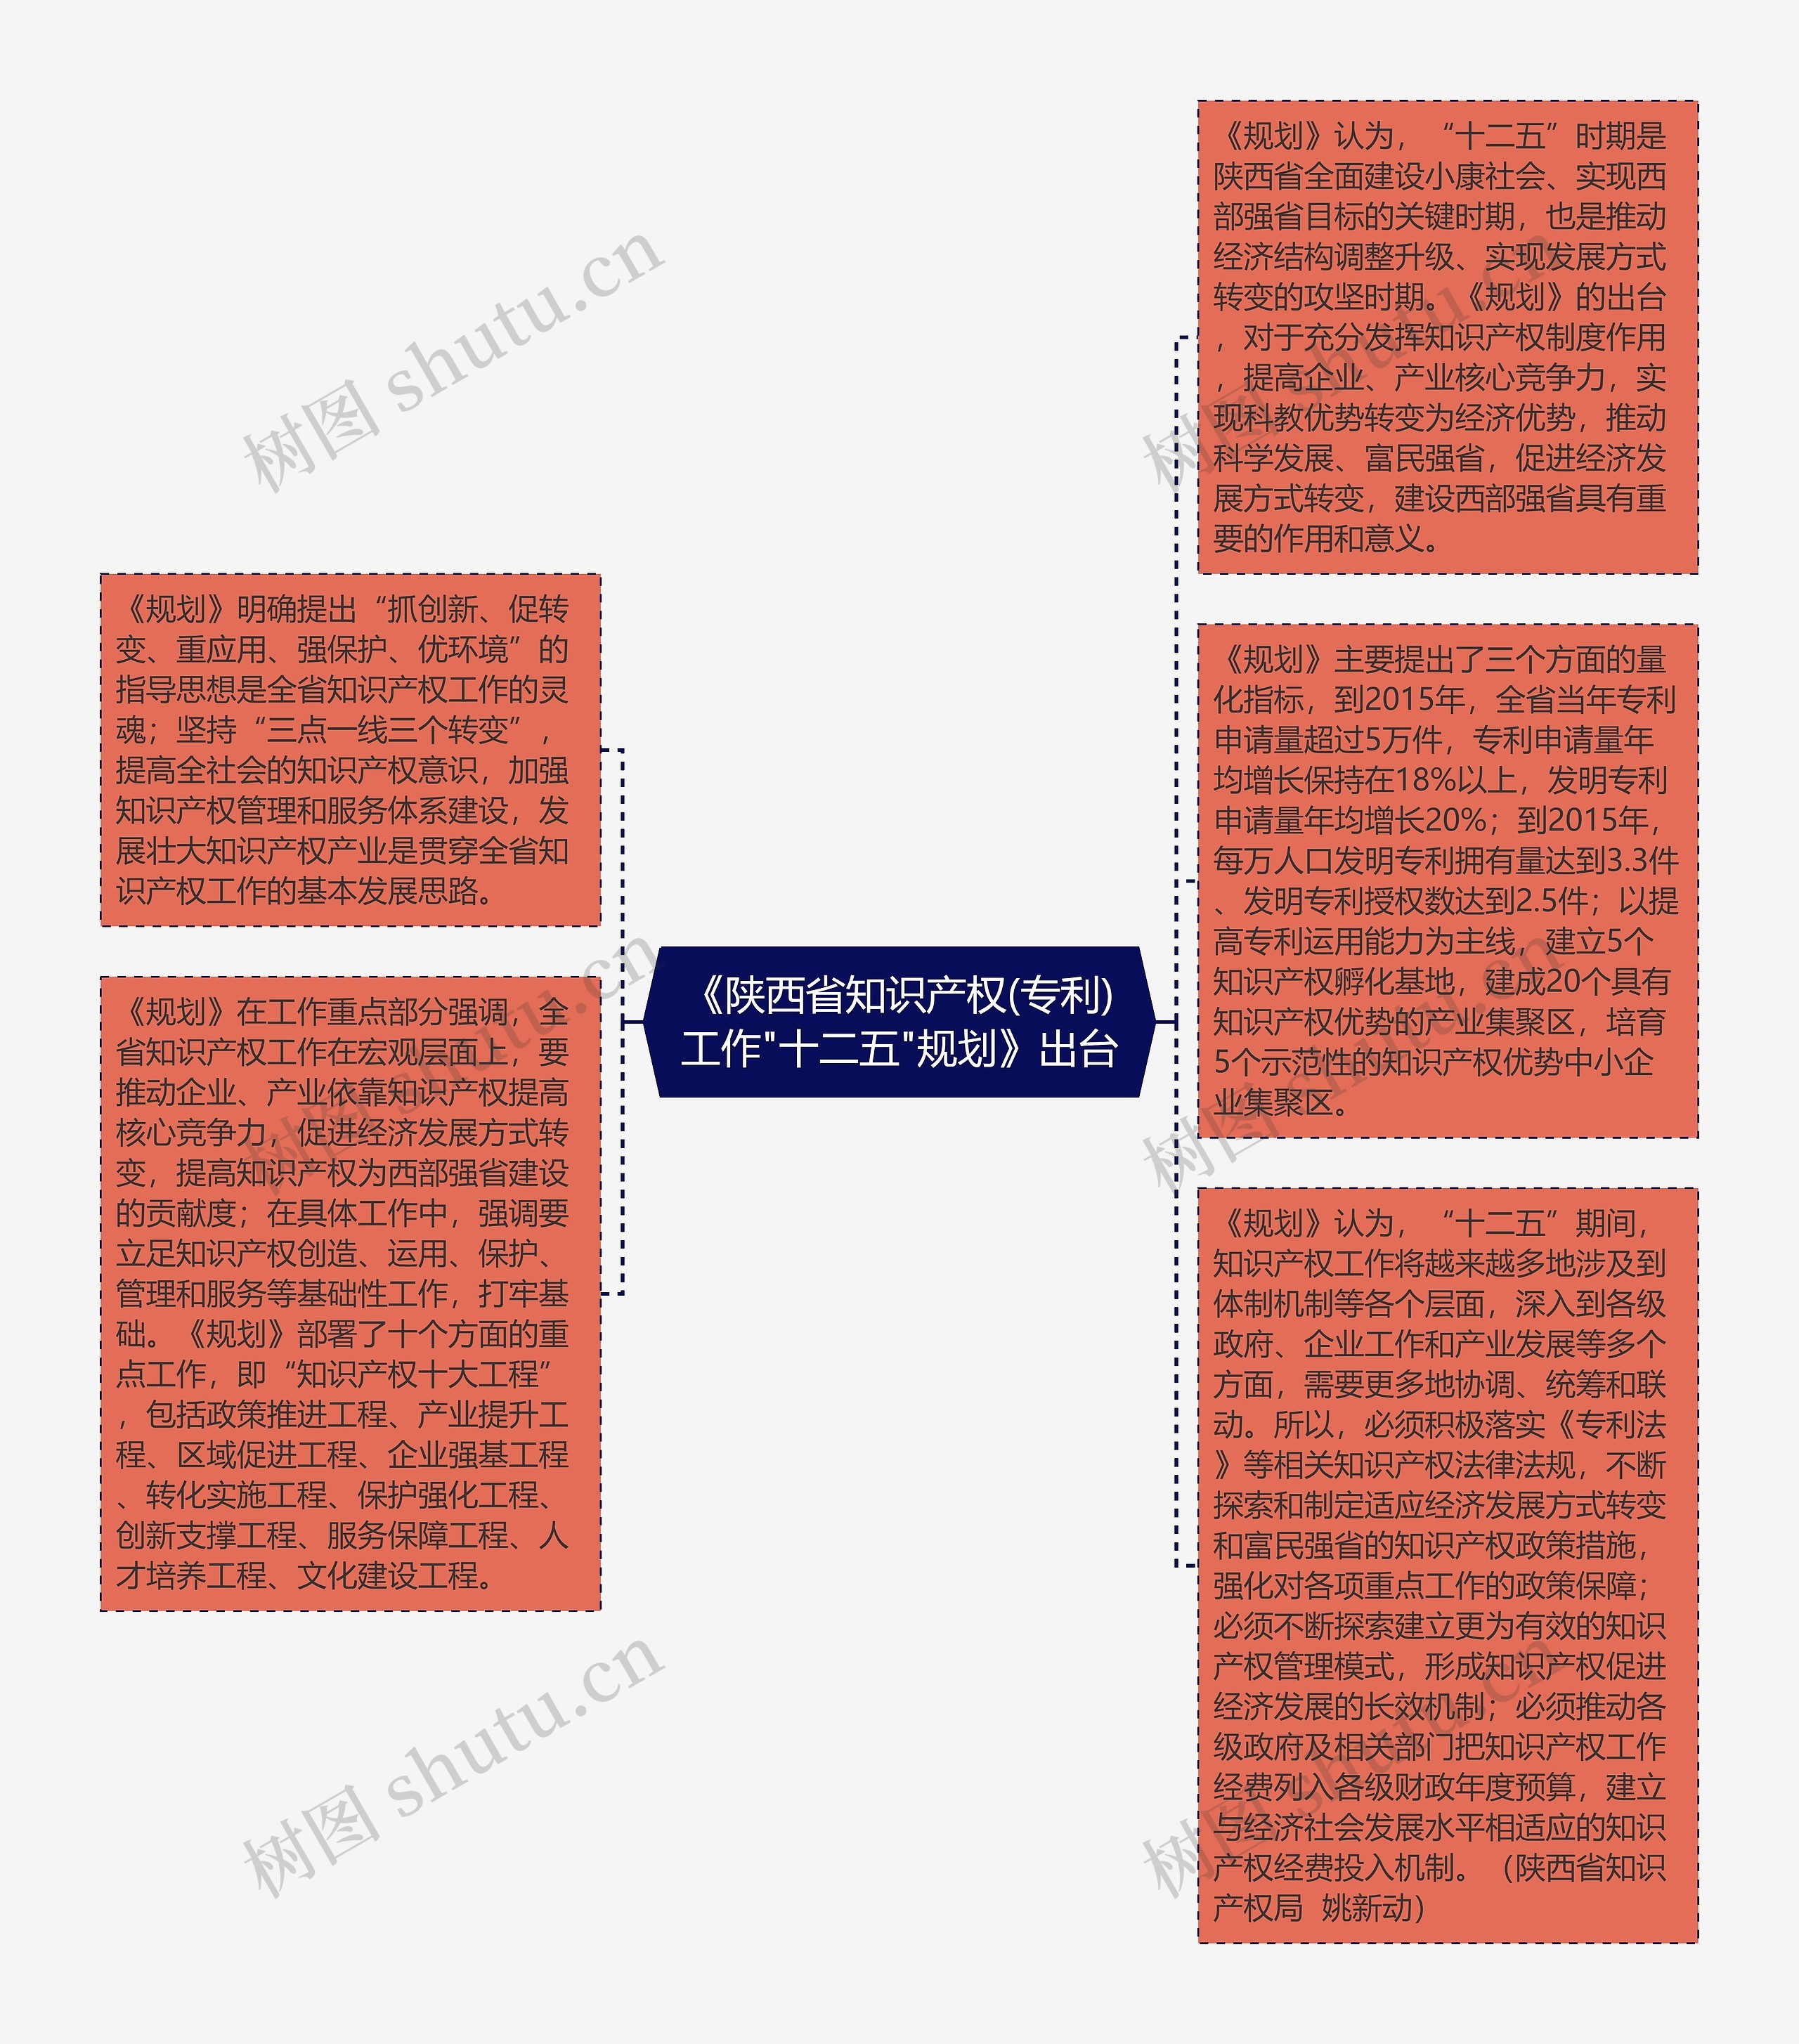 《陕西省知识产权(专利)工作"十二五"规划》出台